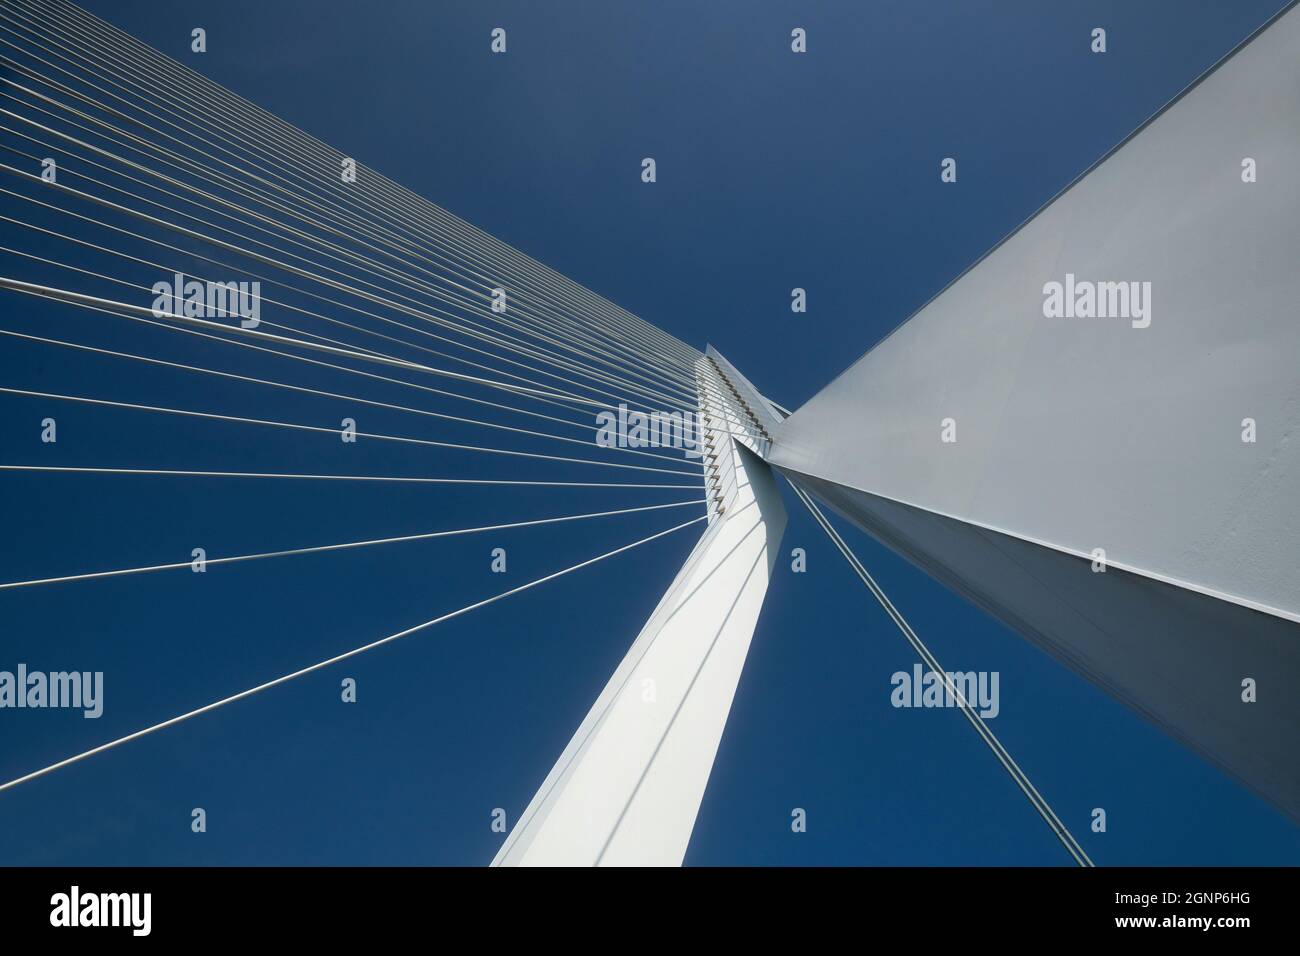 Splendide immagini ravvicinate del ponte Erasmus nel centro di Rotterdam, progettato dal famoso architetto ben van Berkel. Foto Stock